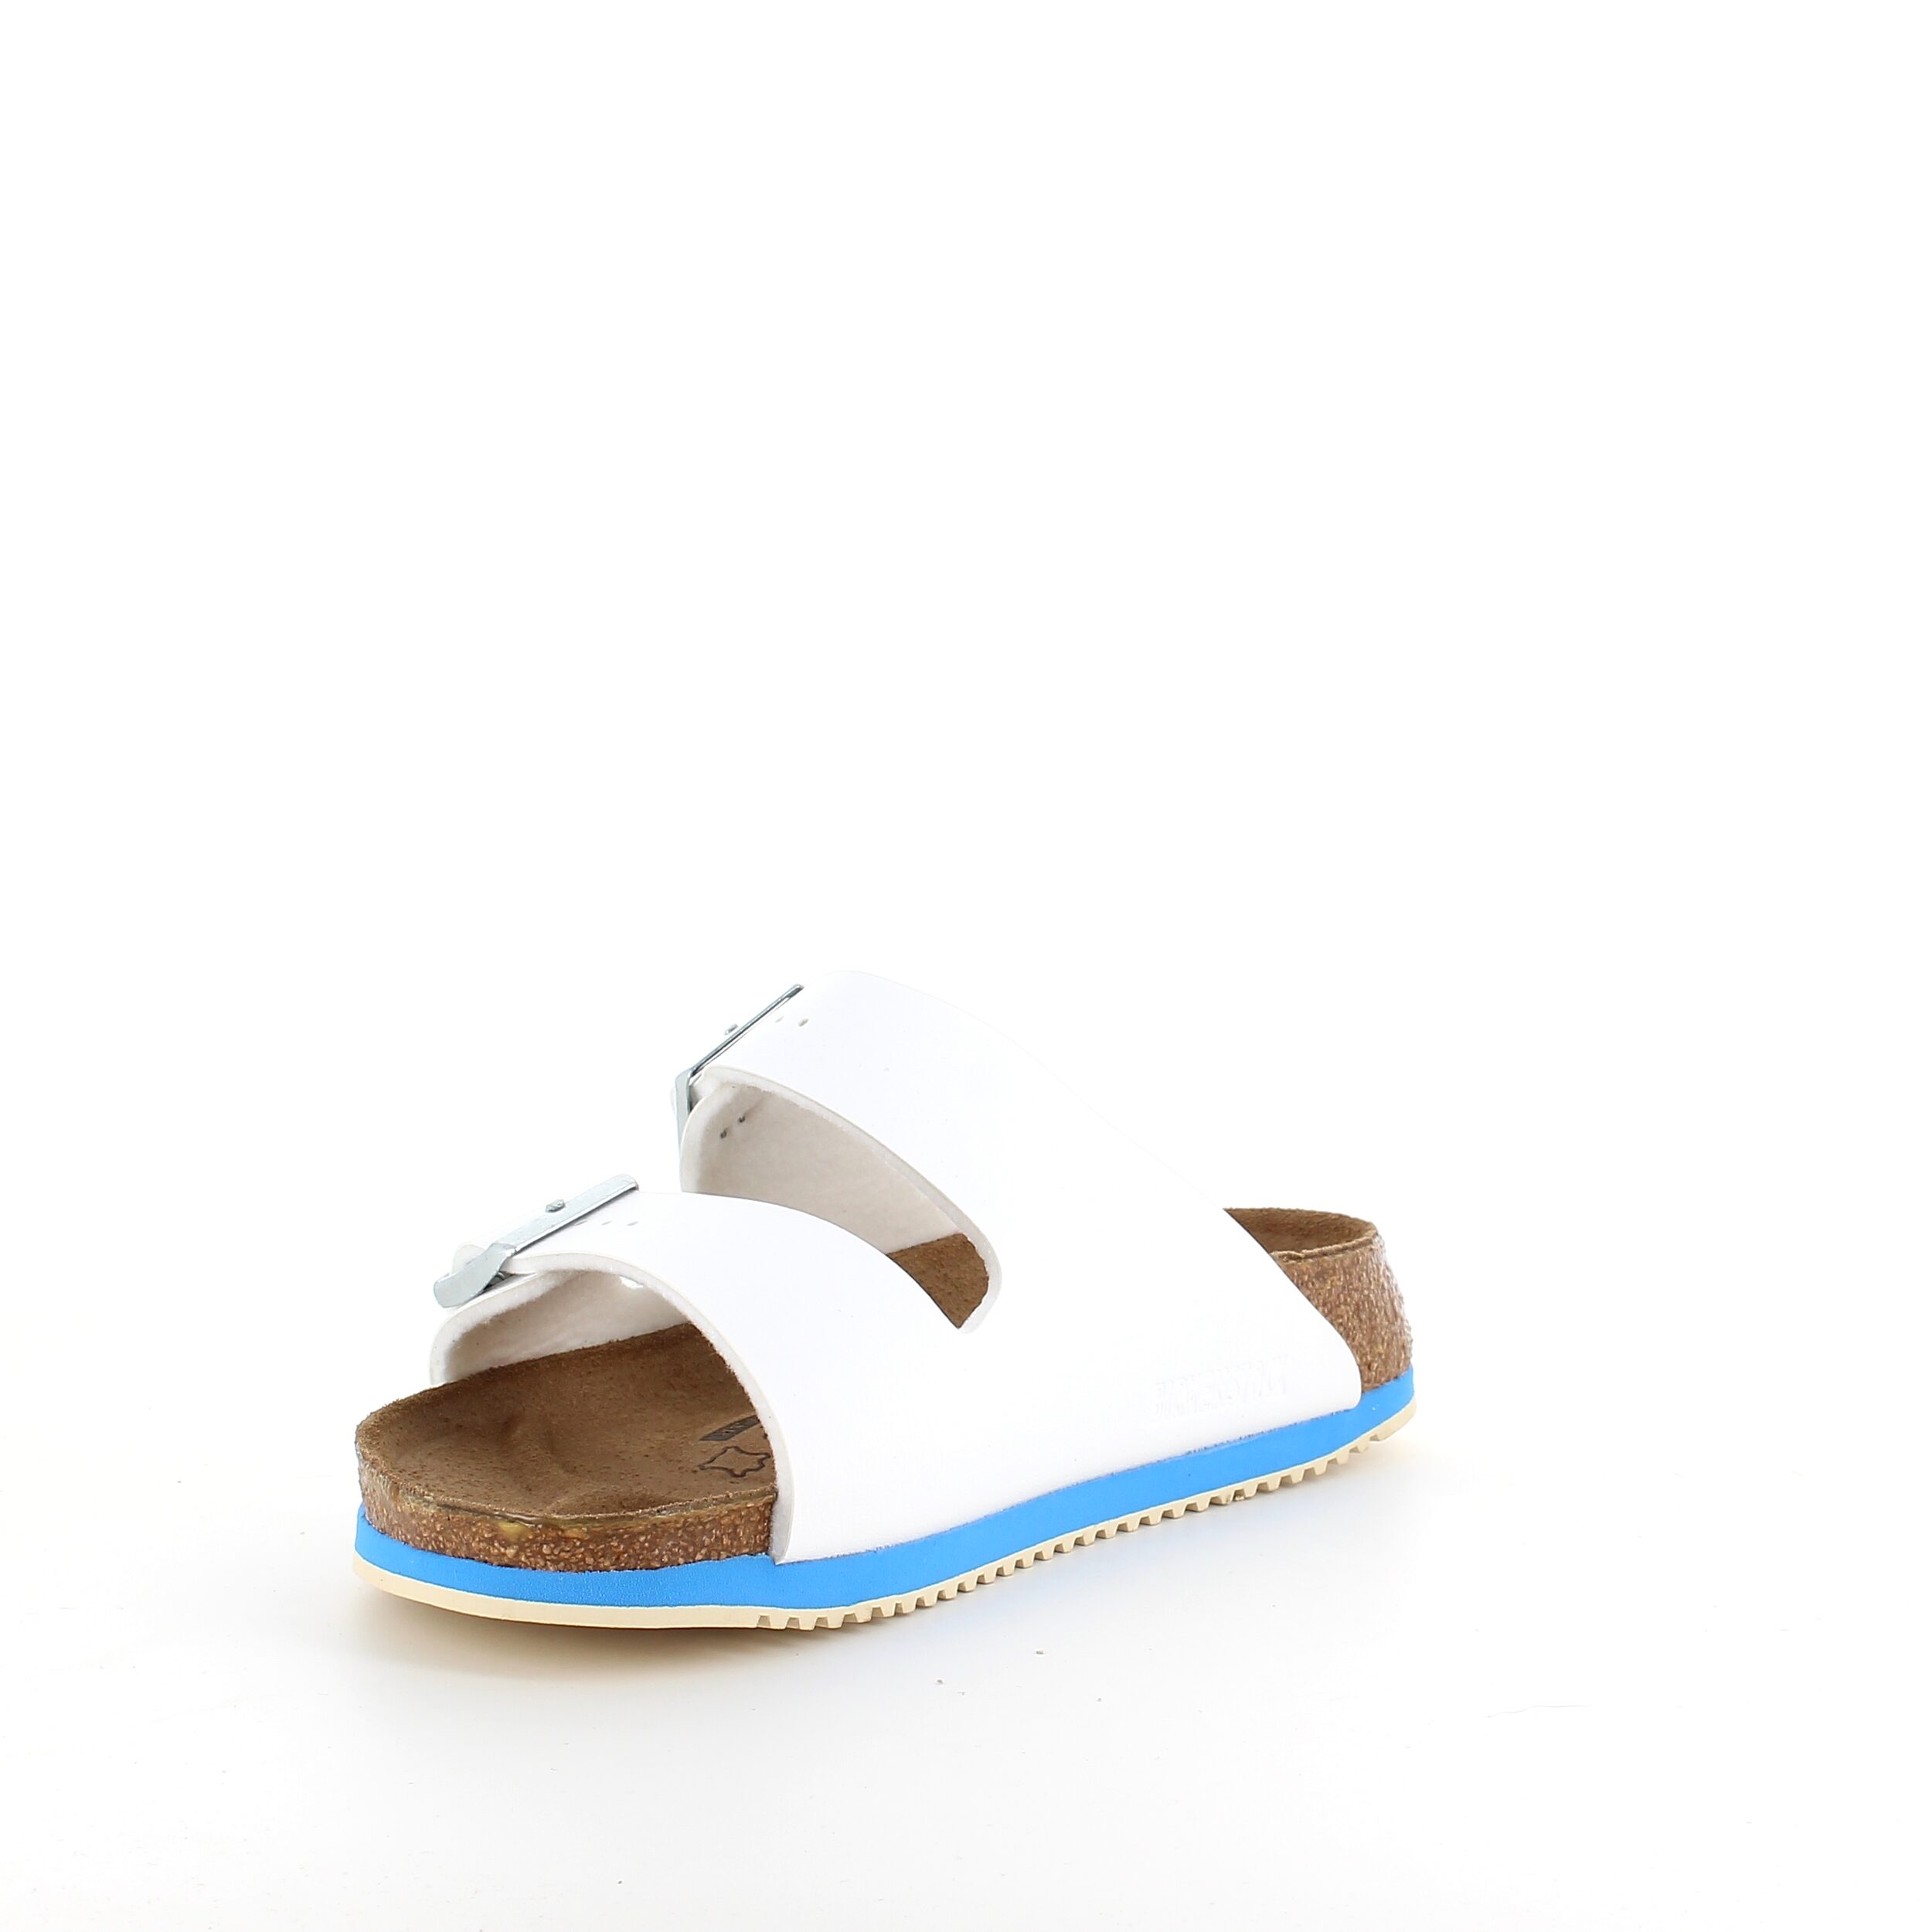 Hvid klassisk Birkenstock sandal med remme. Få den her